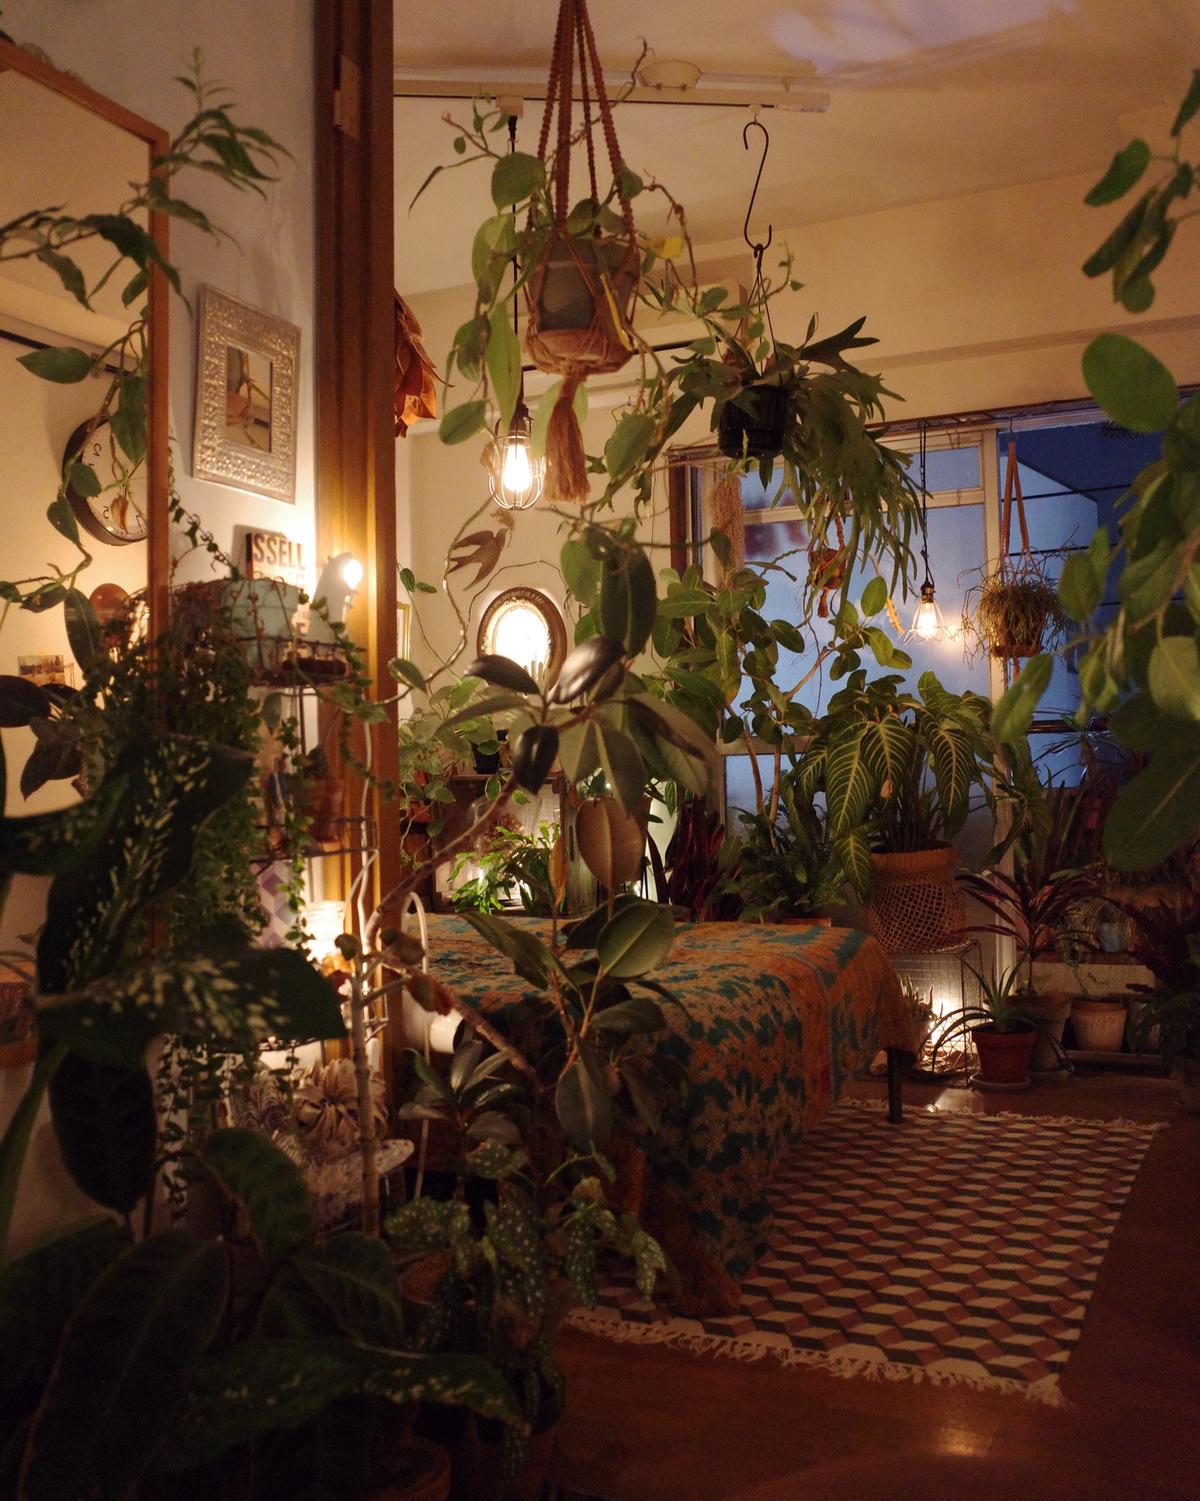 インテリア映えする植物の飾り方 ビカクシダ Shinpeiが投稿した記事 Sharee